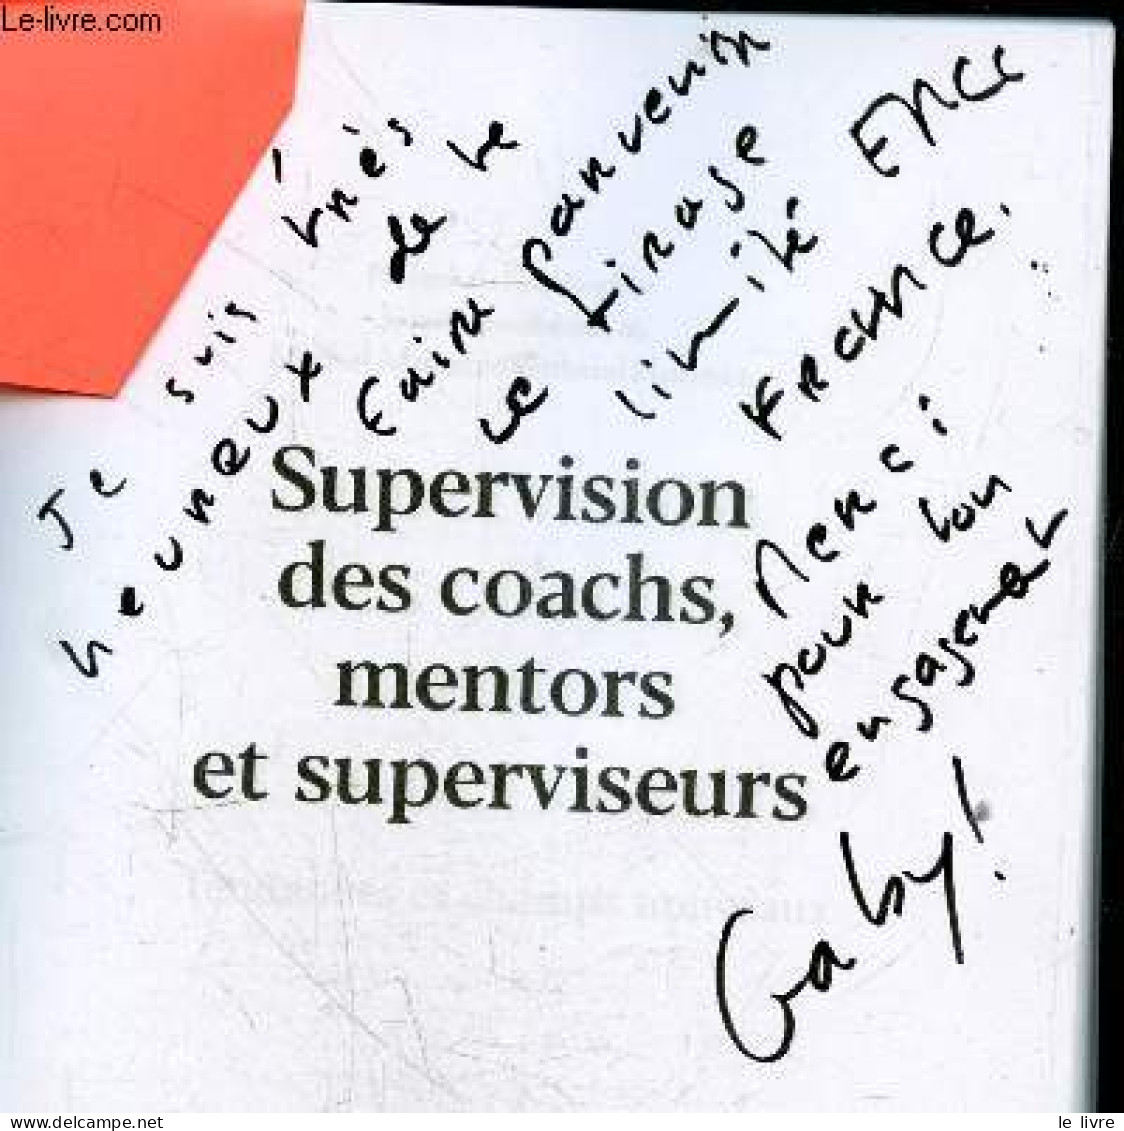 Supervision Des Coaches, Mentors Et Superviseurs - Tendances Et Champs Nouveaux + Envoi De L'auteur - "tirage Limite EMC - Livres Dédicacés